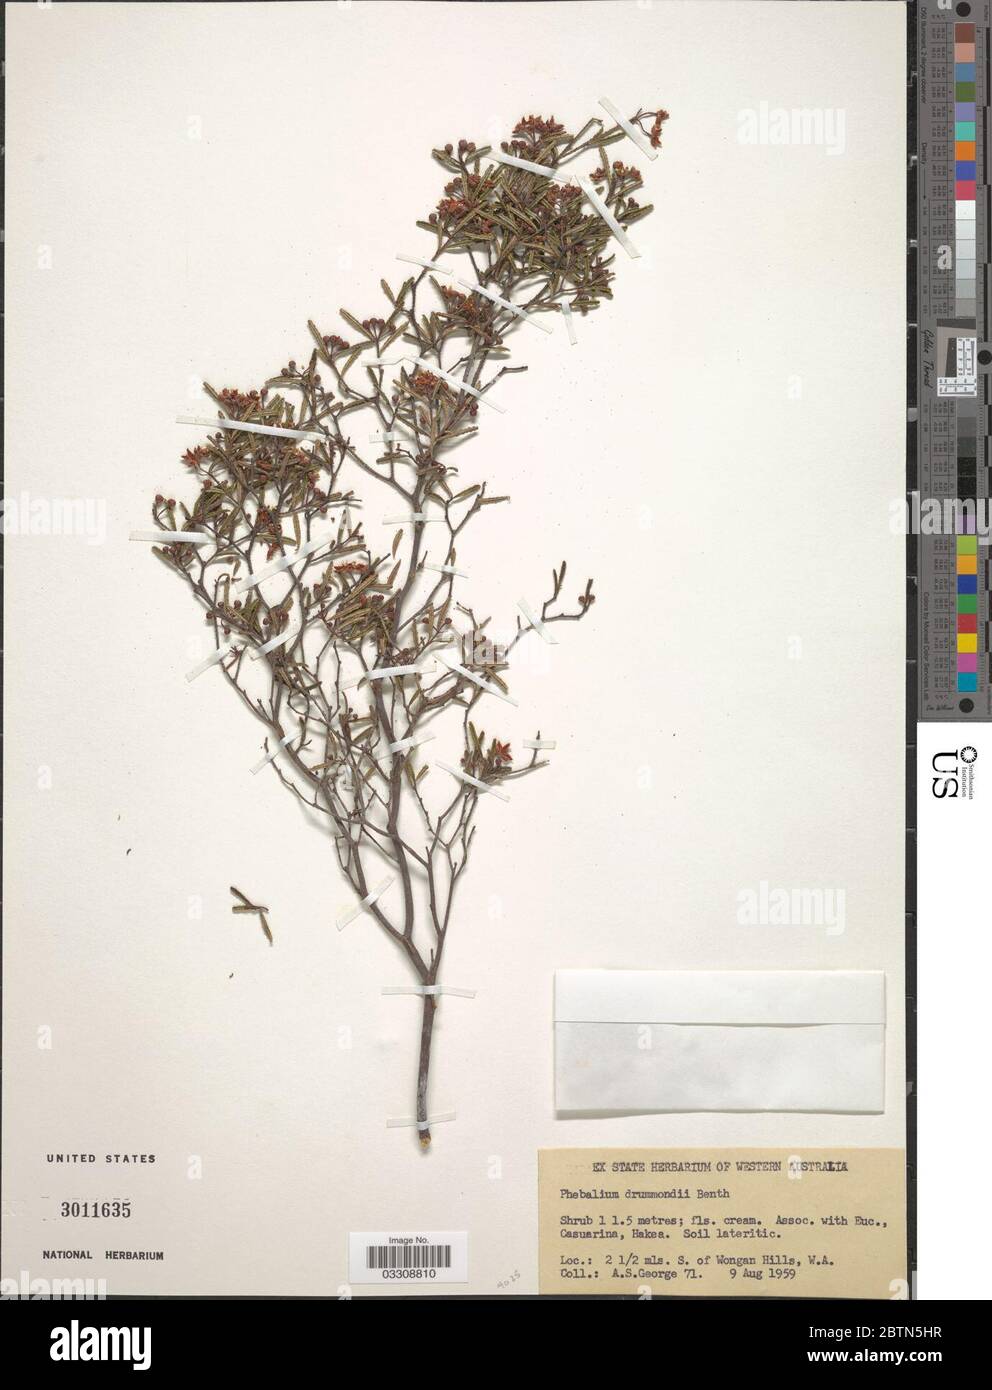 Phebalium drummondii Benth. 12 Jul 20191 Stock Photo